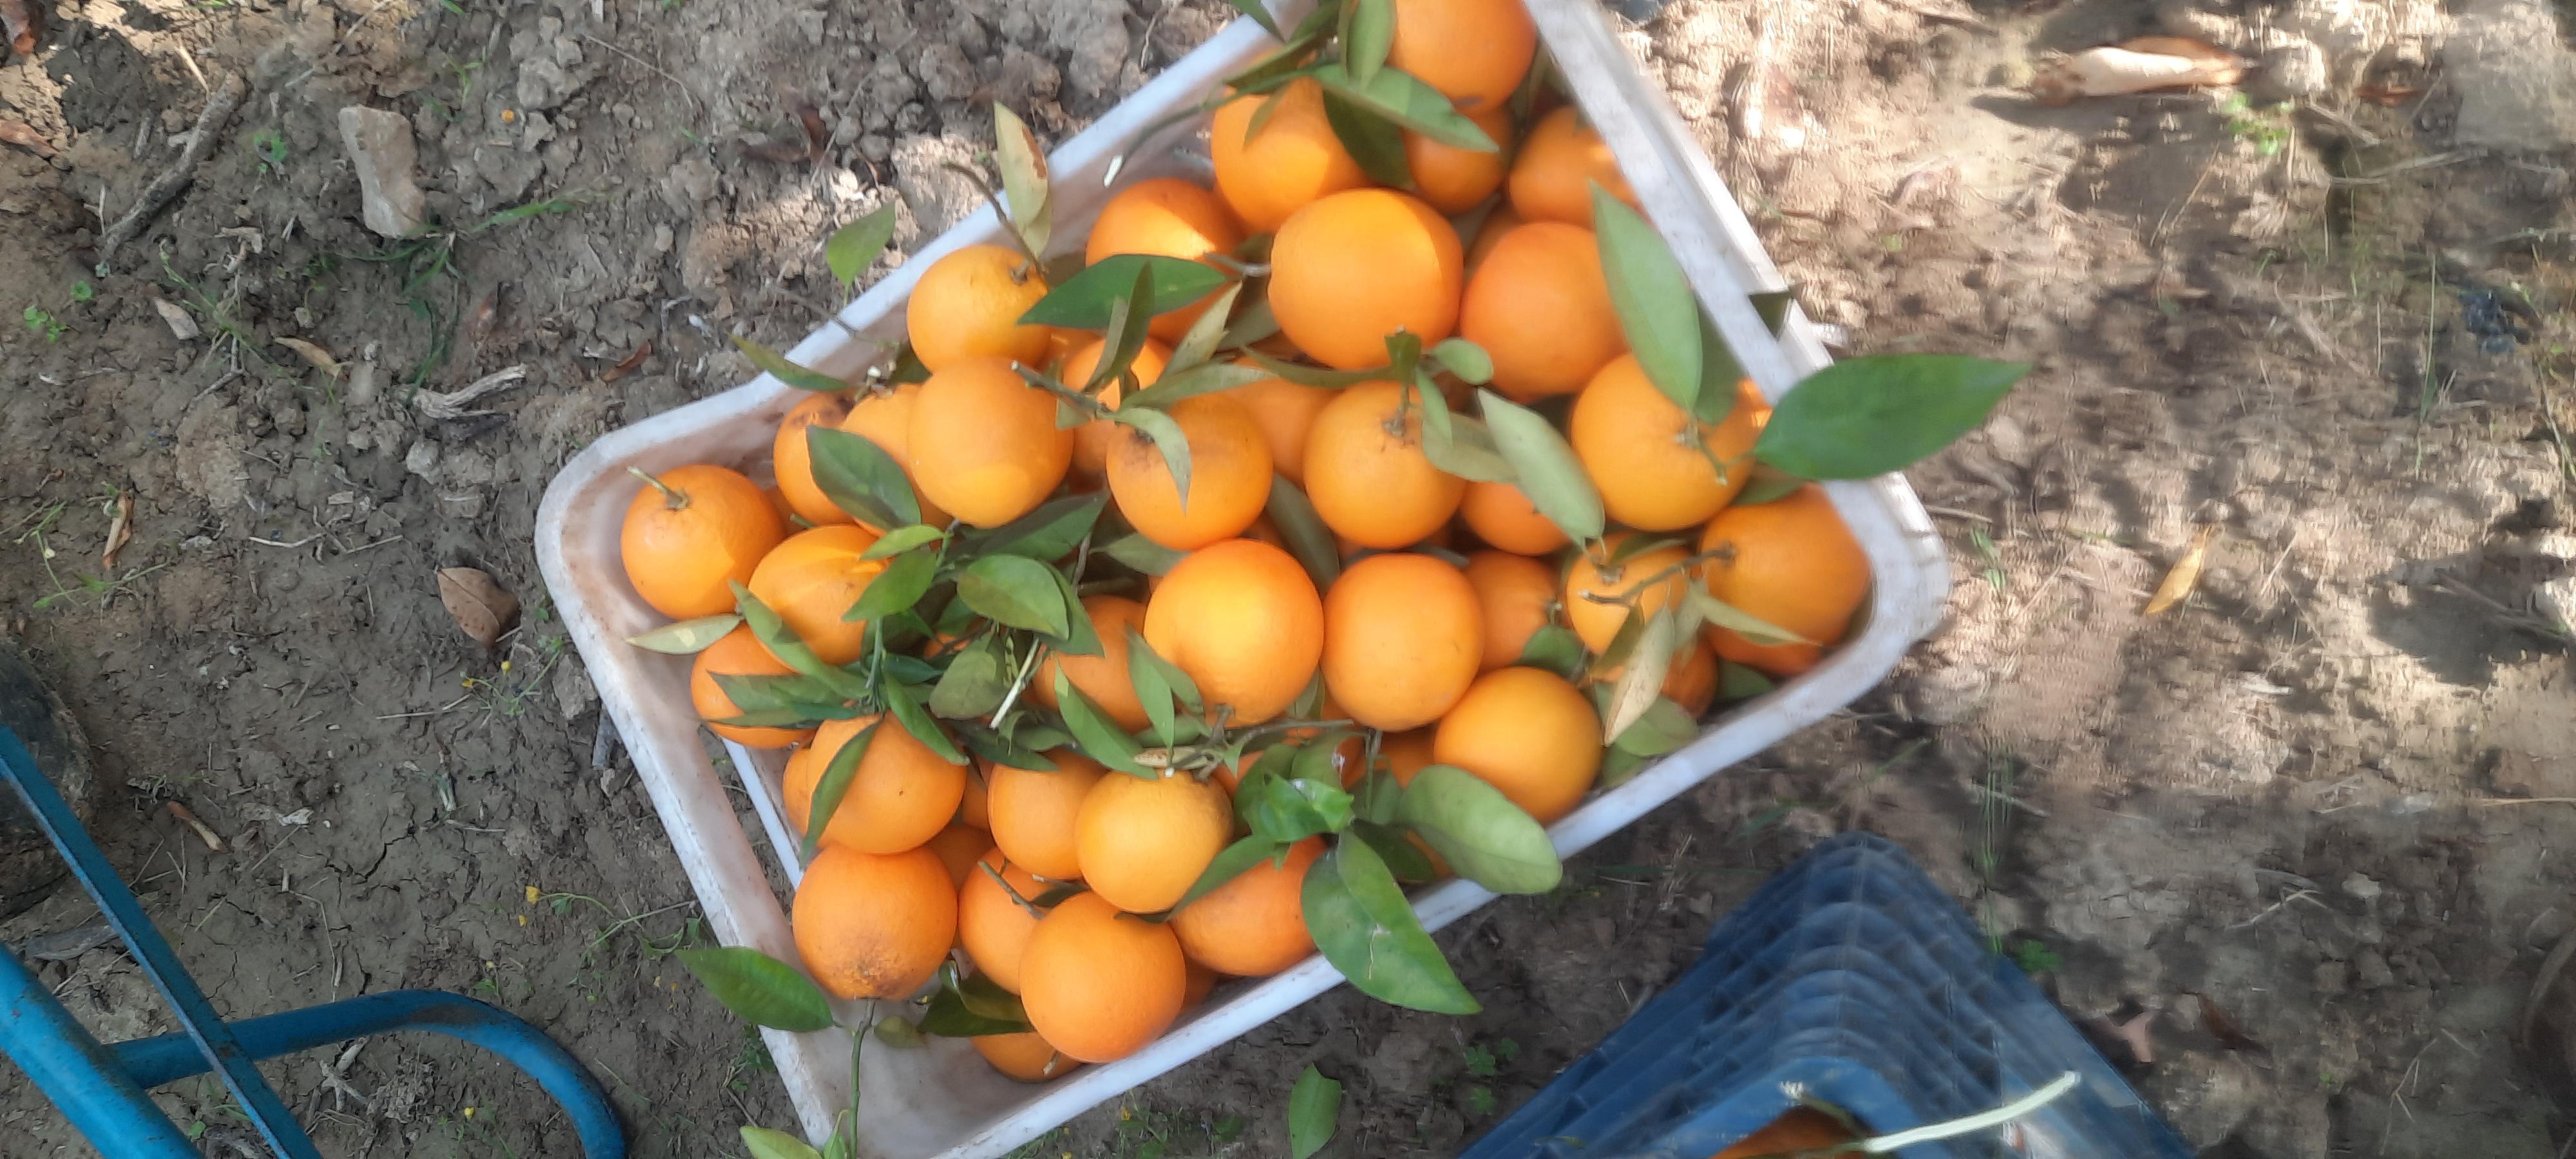 Portakal - İmdat Kılınç tarafından verilen valencia çeşidi portakal alım ilanlarını tarimziraat.com adresinde bulabilirsiniz.